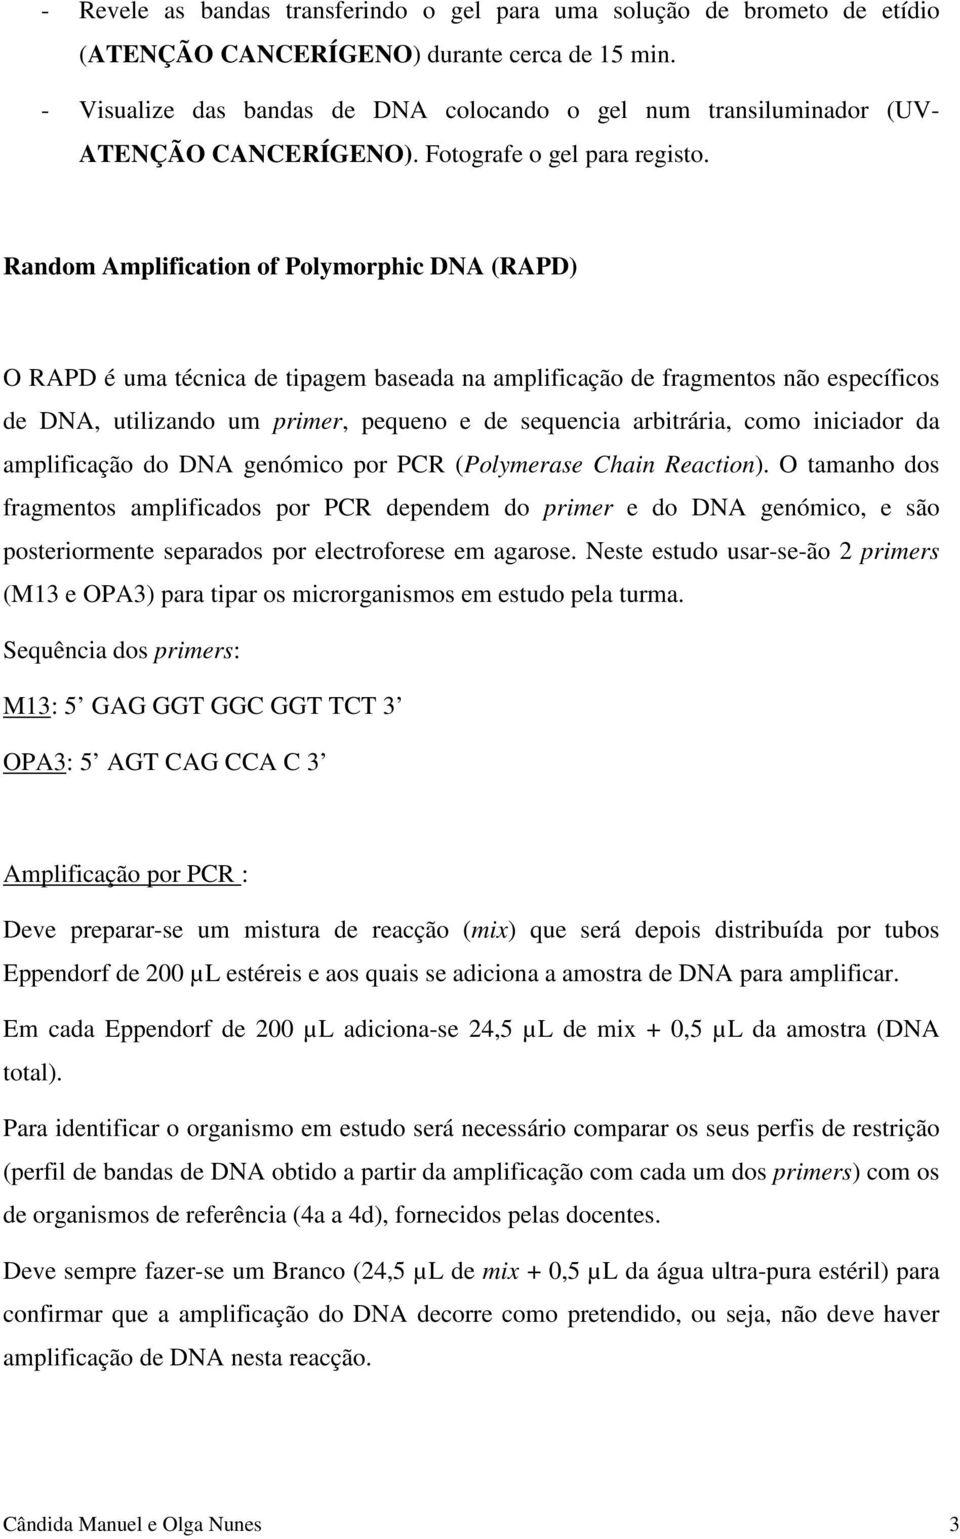 Random Amplification of Polymorphic DNA (RAPD) O RAPD é uma técnica de tipagem baseada na amplificação de fragmentos não específicos de DNA, utilizando um primer, pequeno e de sequencia arbitrária,